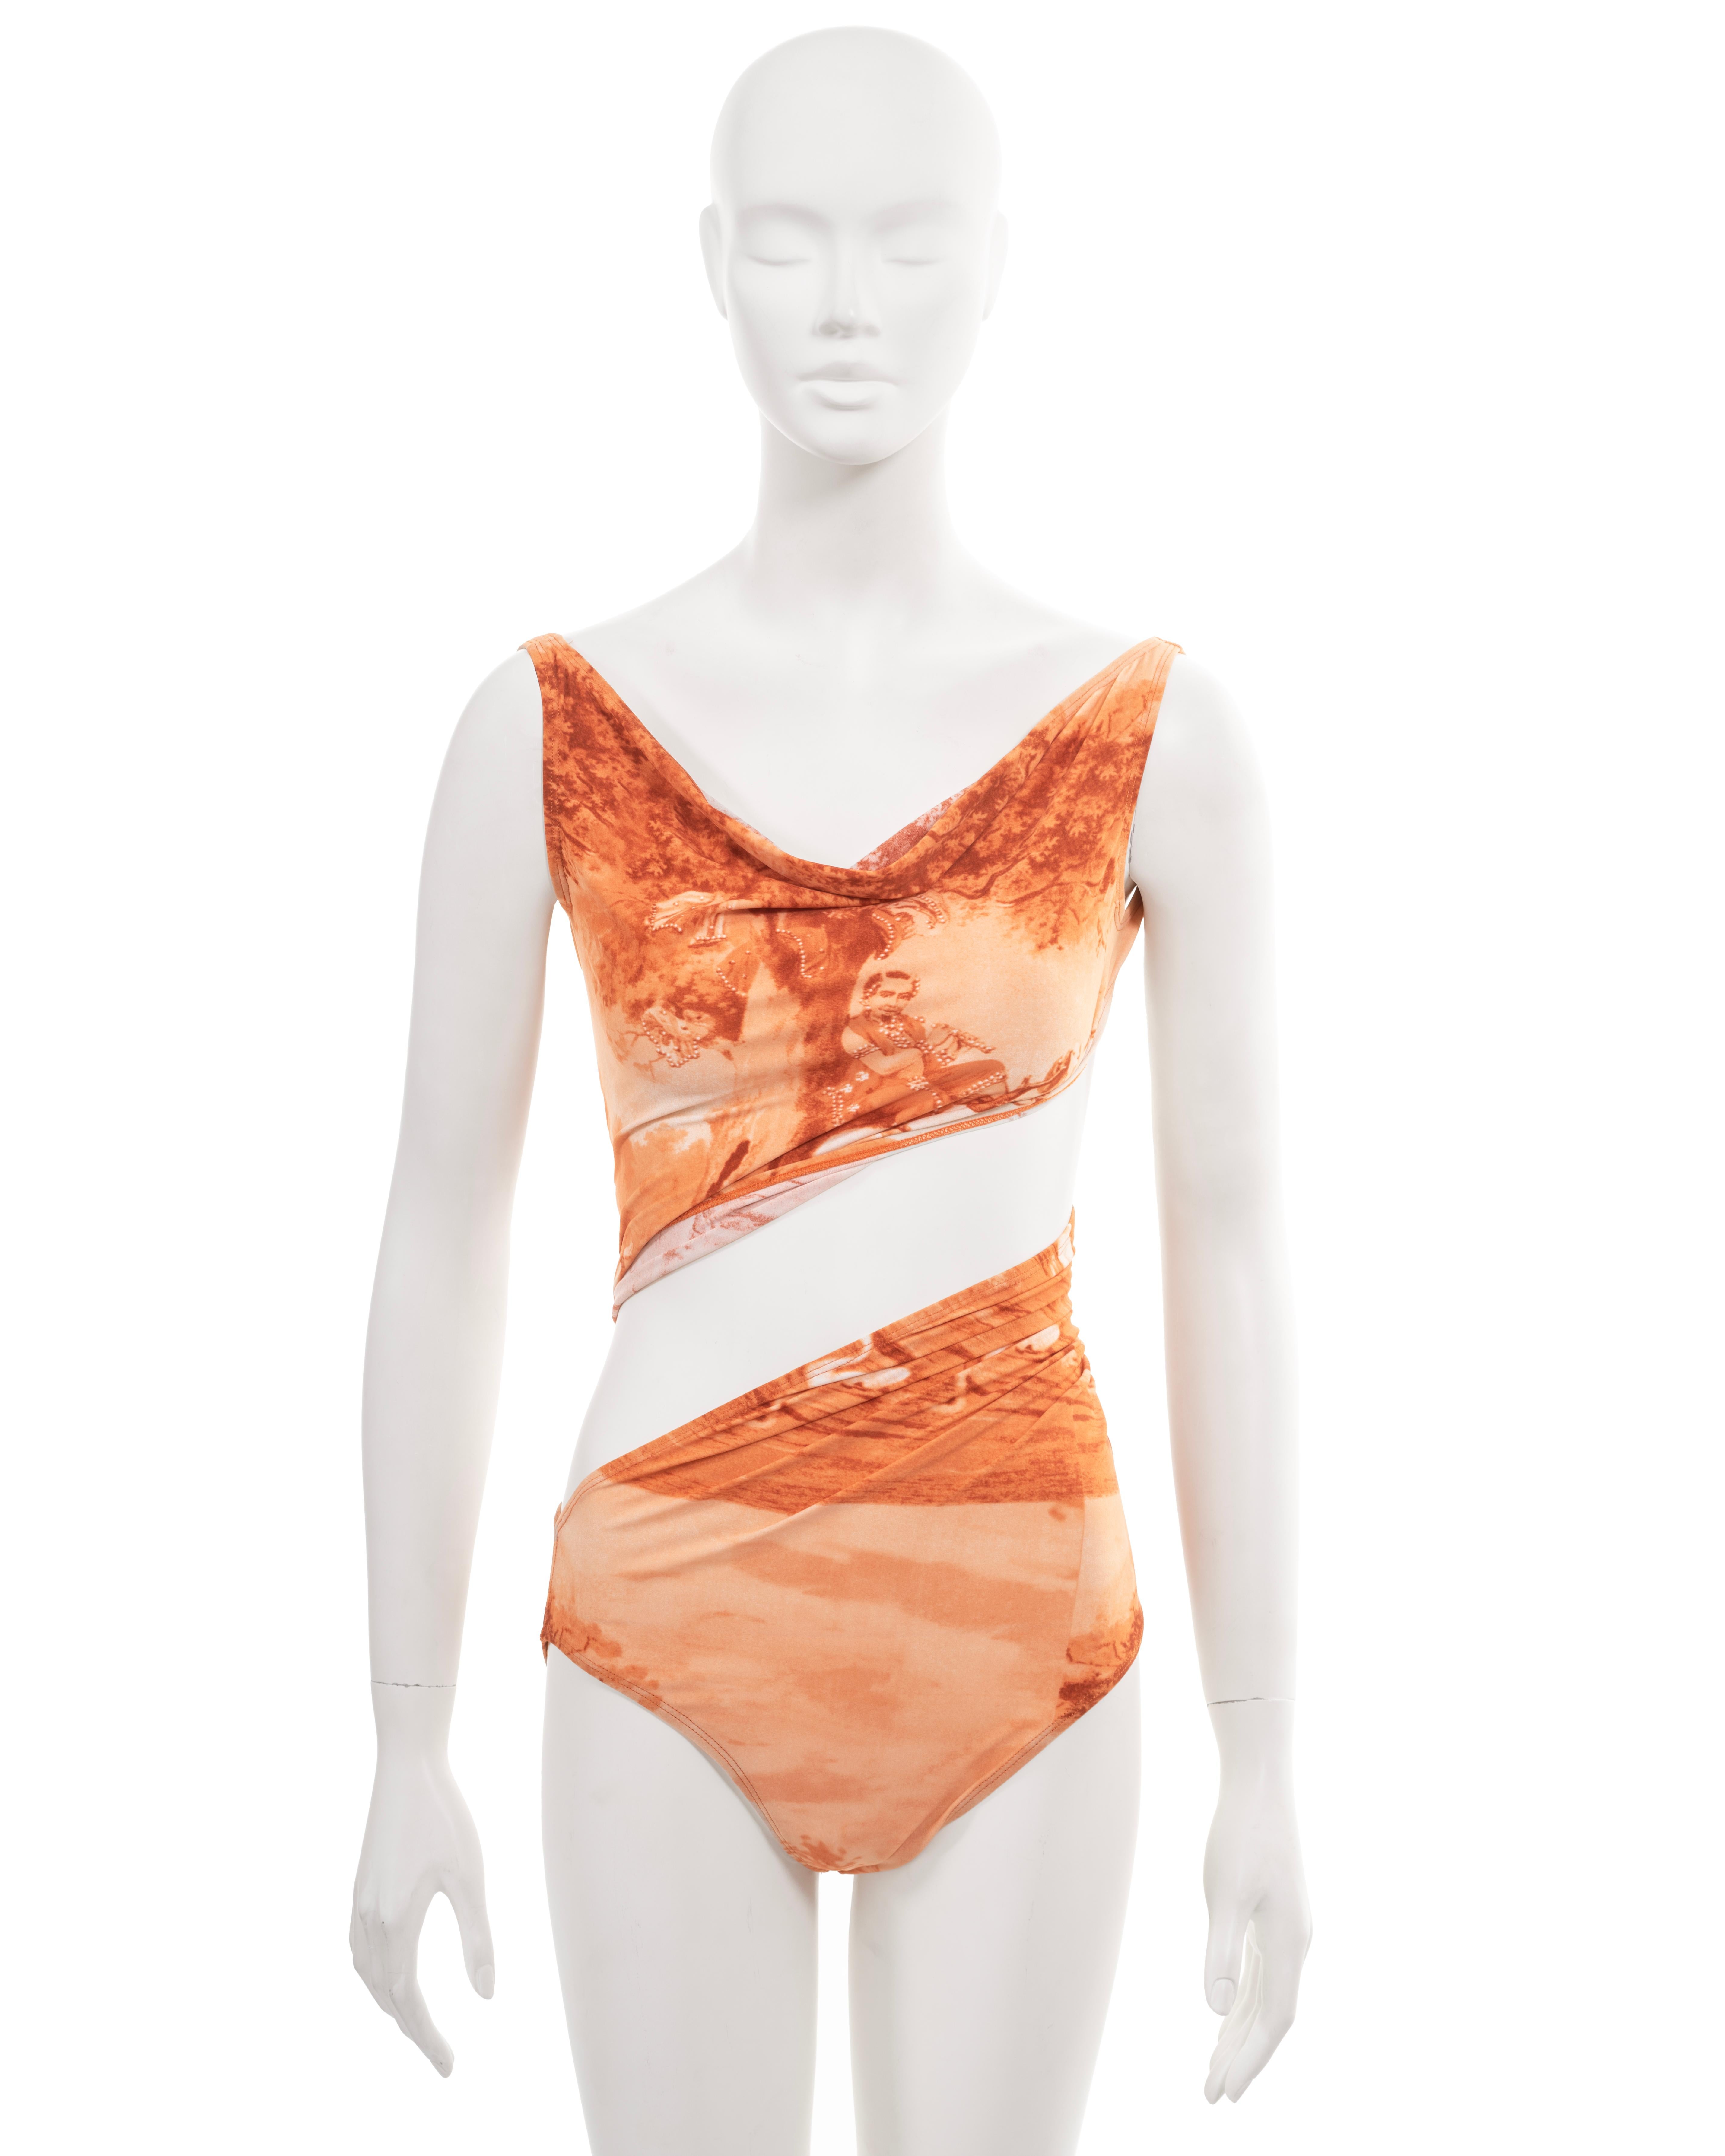 ▪ Jean Paul Gaultier-Body mit Archivierung 
▪ Frühjahr-Sommer 1998
▪ Verkauft von One Of A Kind Archive
▪ Der orangefarbene Alloverdruck zeigt das Kunstwerk 